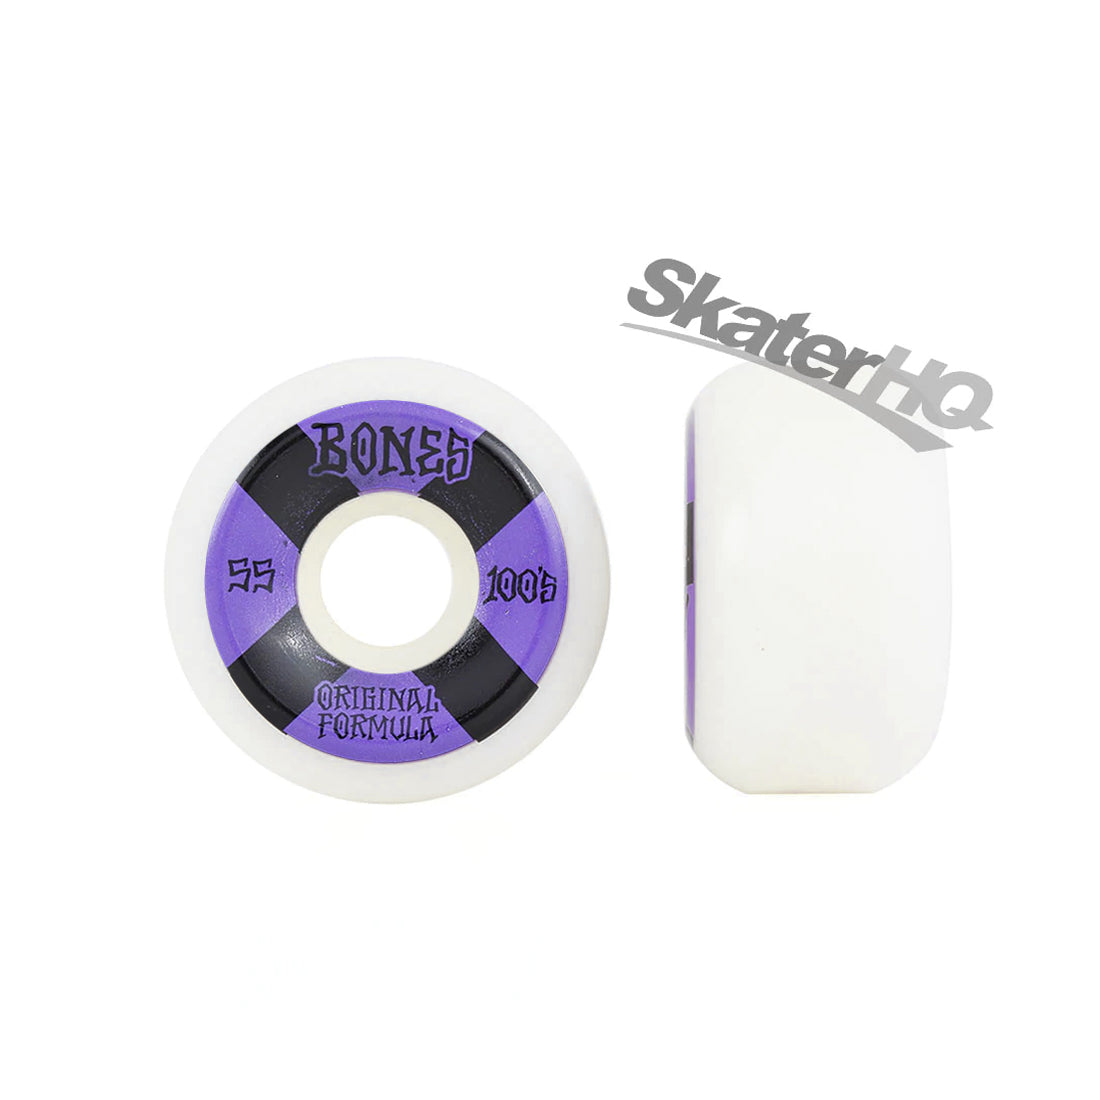 Bones OG 100s V5 Sidecut 55mm - White/Purple Skateboard Wheels